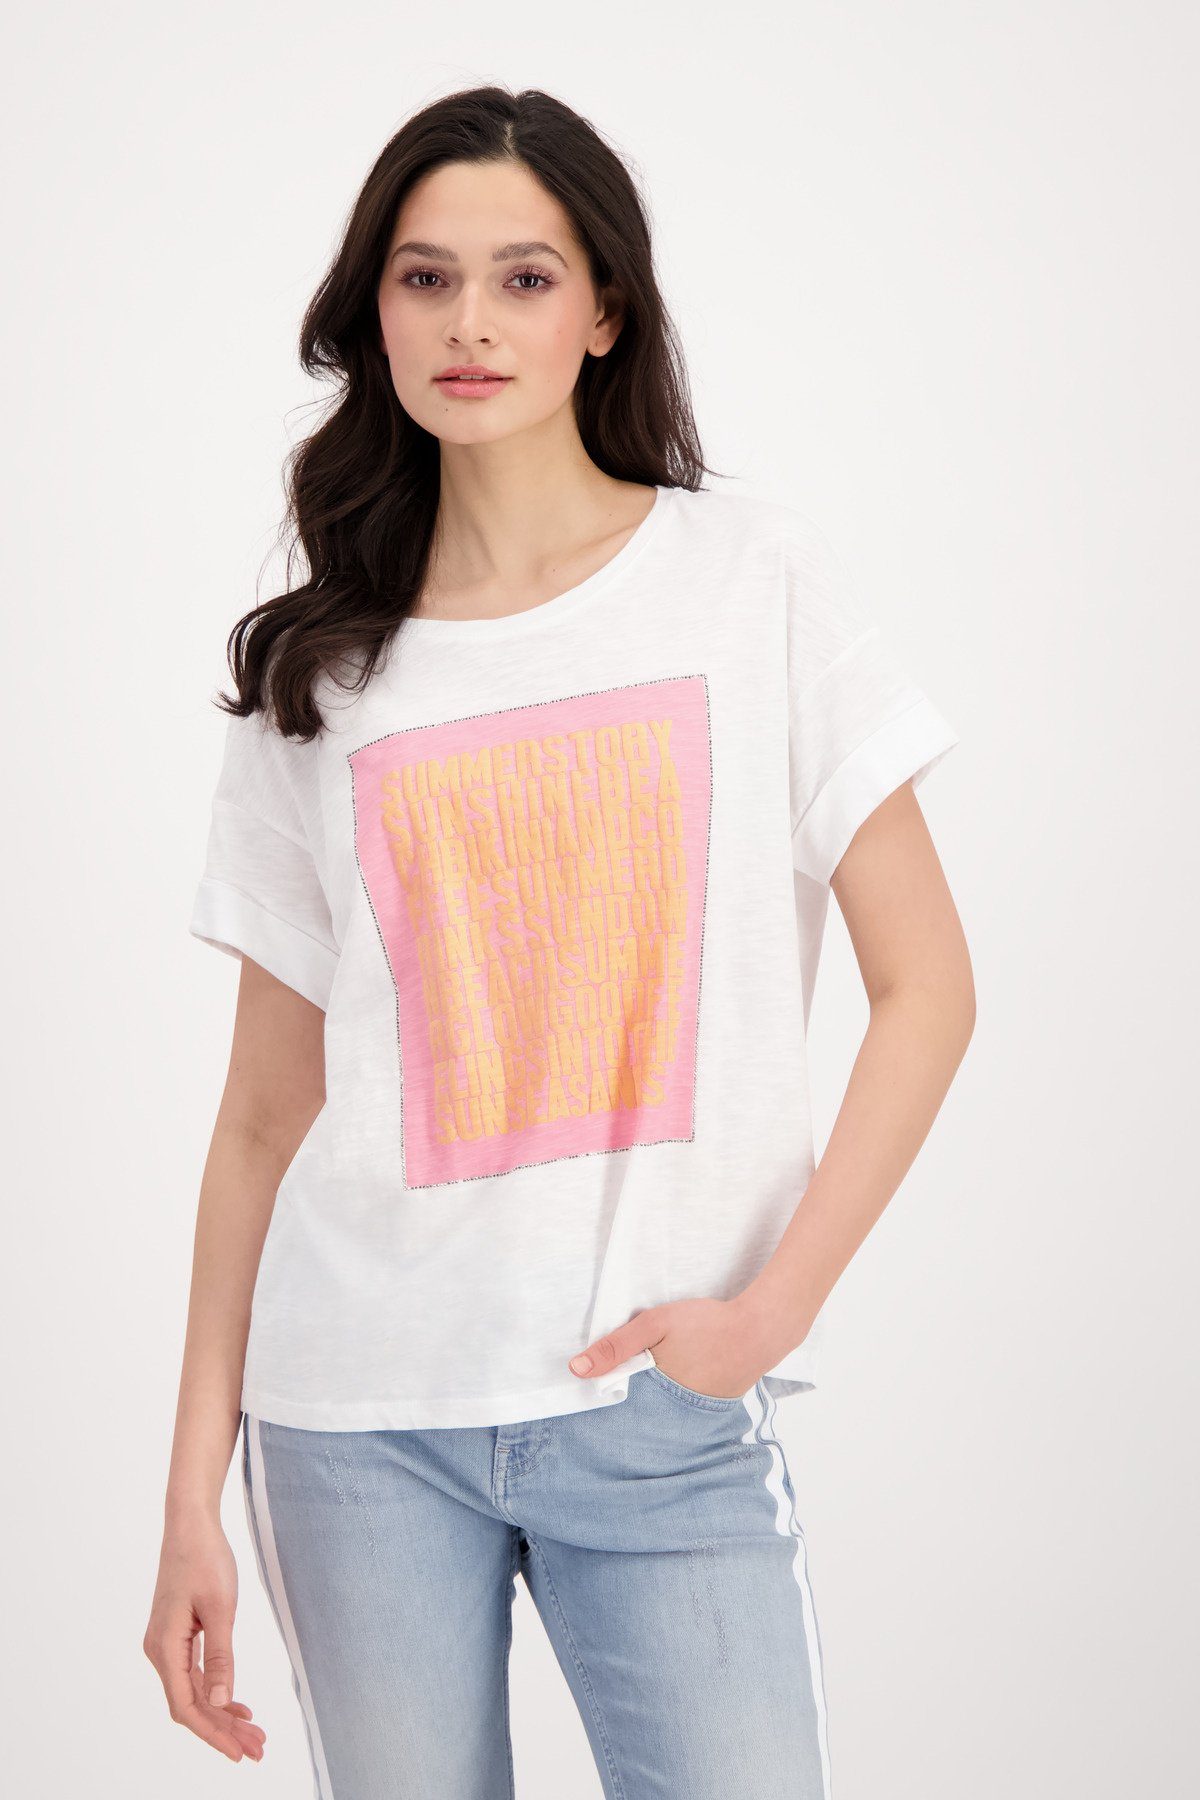 T-Shirt Shirt Flammgarn mit Schrift Monari 3D